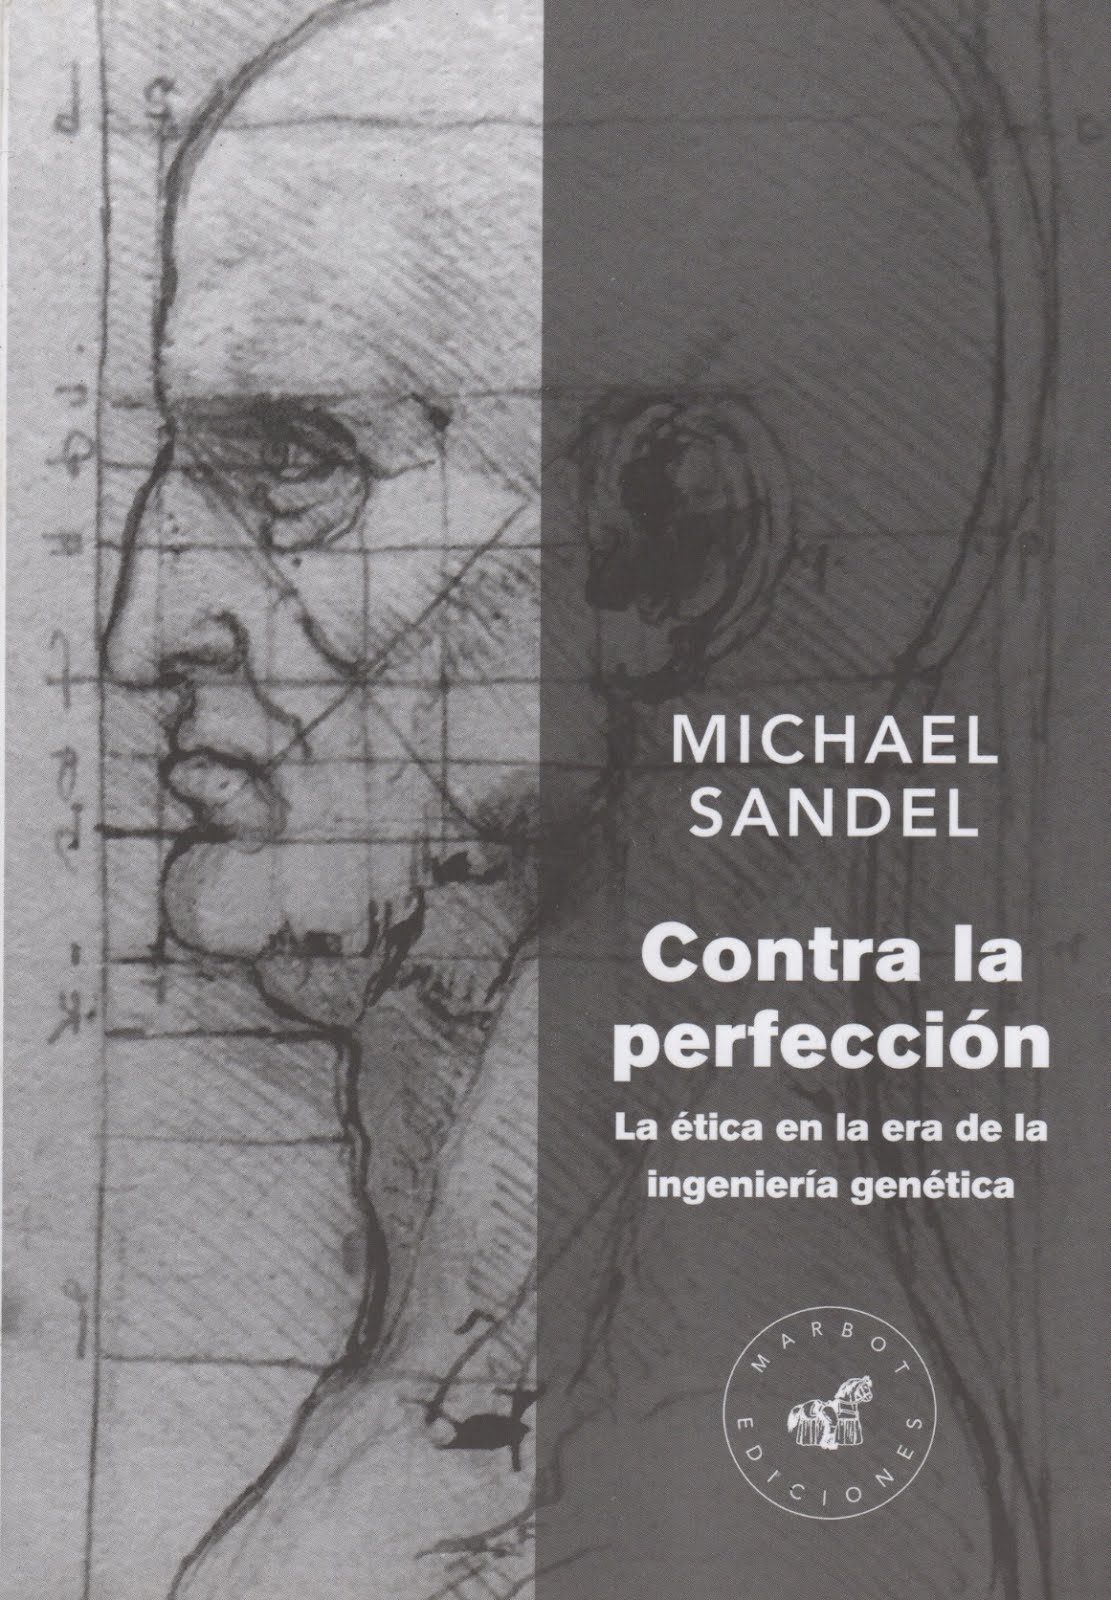 Michael Sandel (Contra la perfección) La ética en la era de la ingeniería genética.